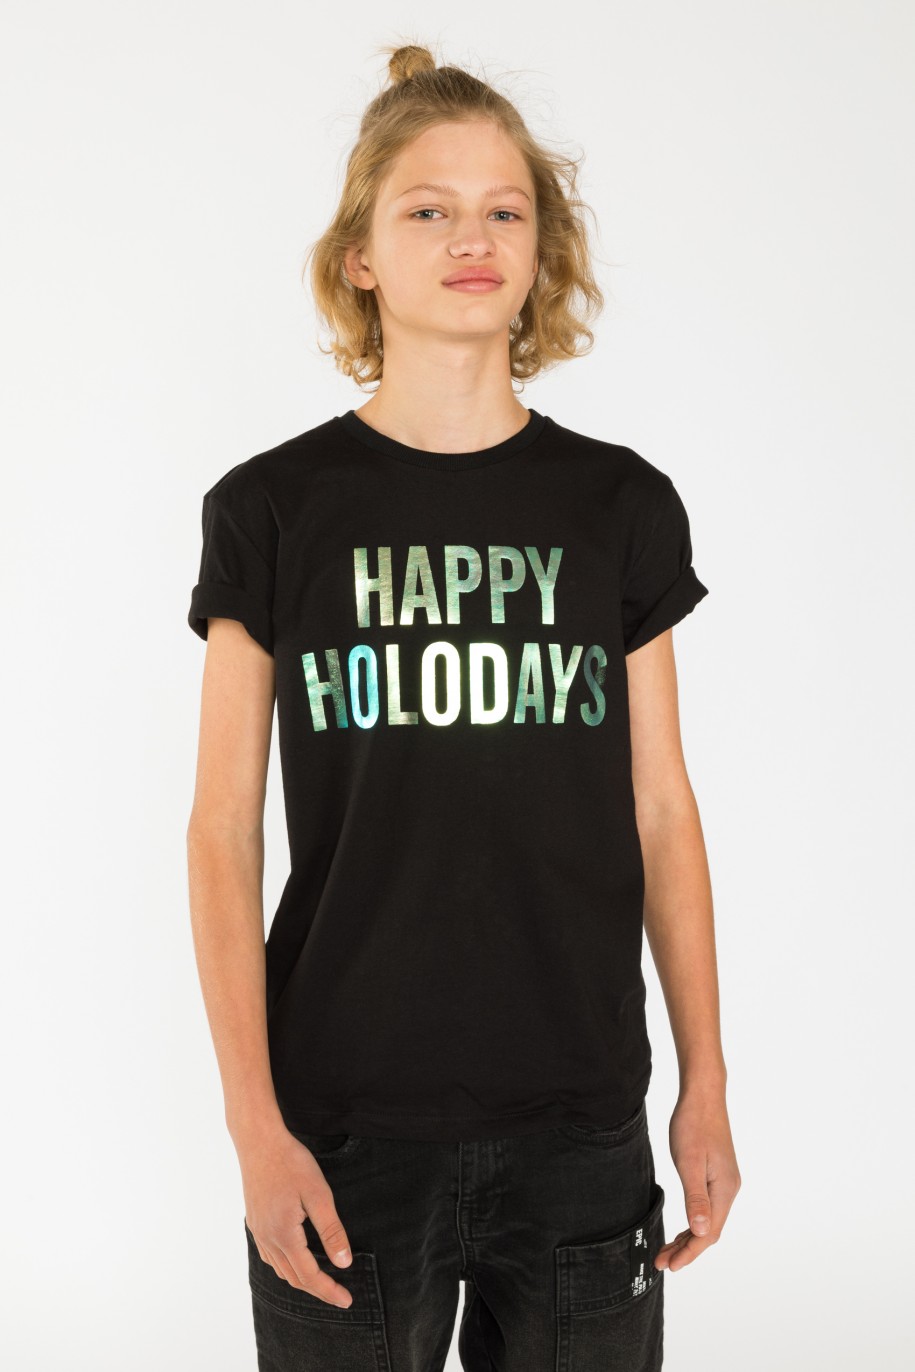 Czarny t-shirt dla chłopaka HAPPY HOLODAYS - 31178